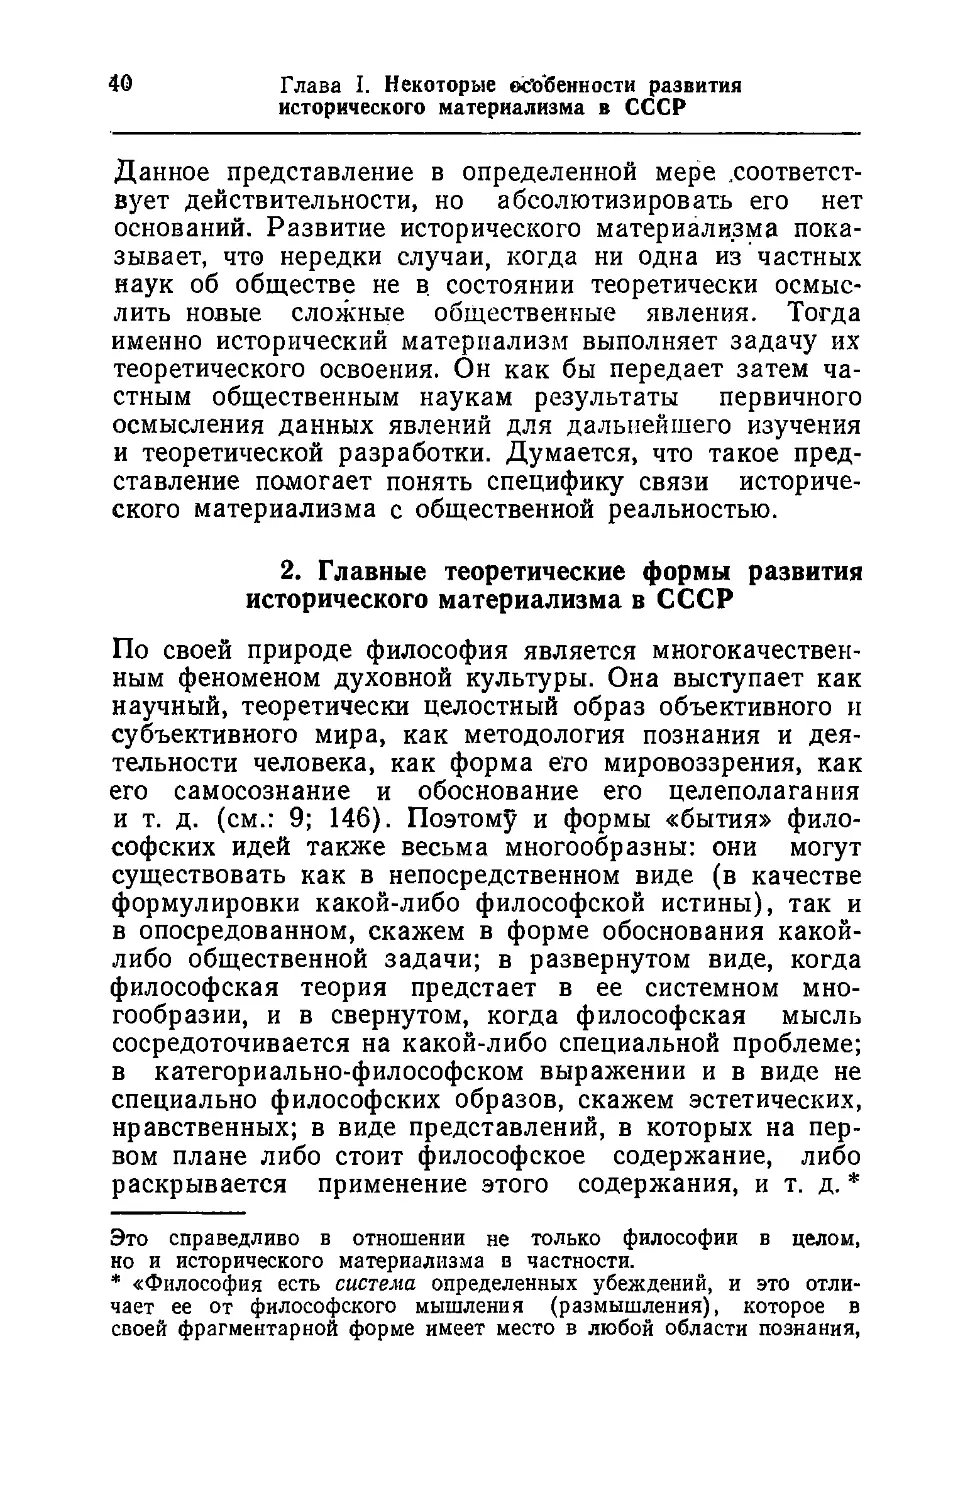 2. Главные теоретические формы развития исторического материализма в СССР